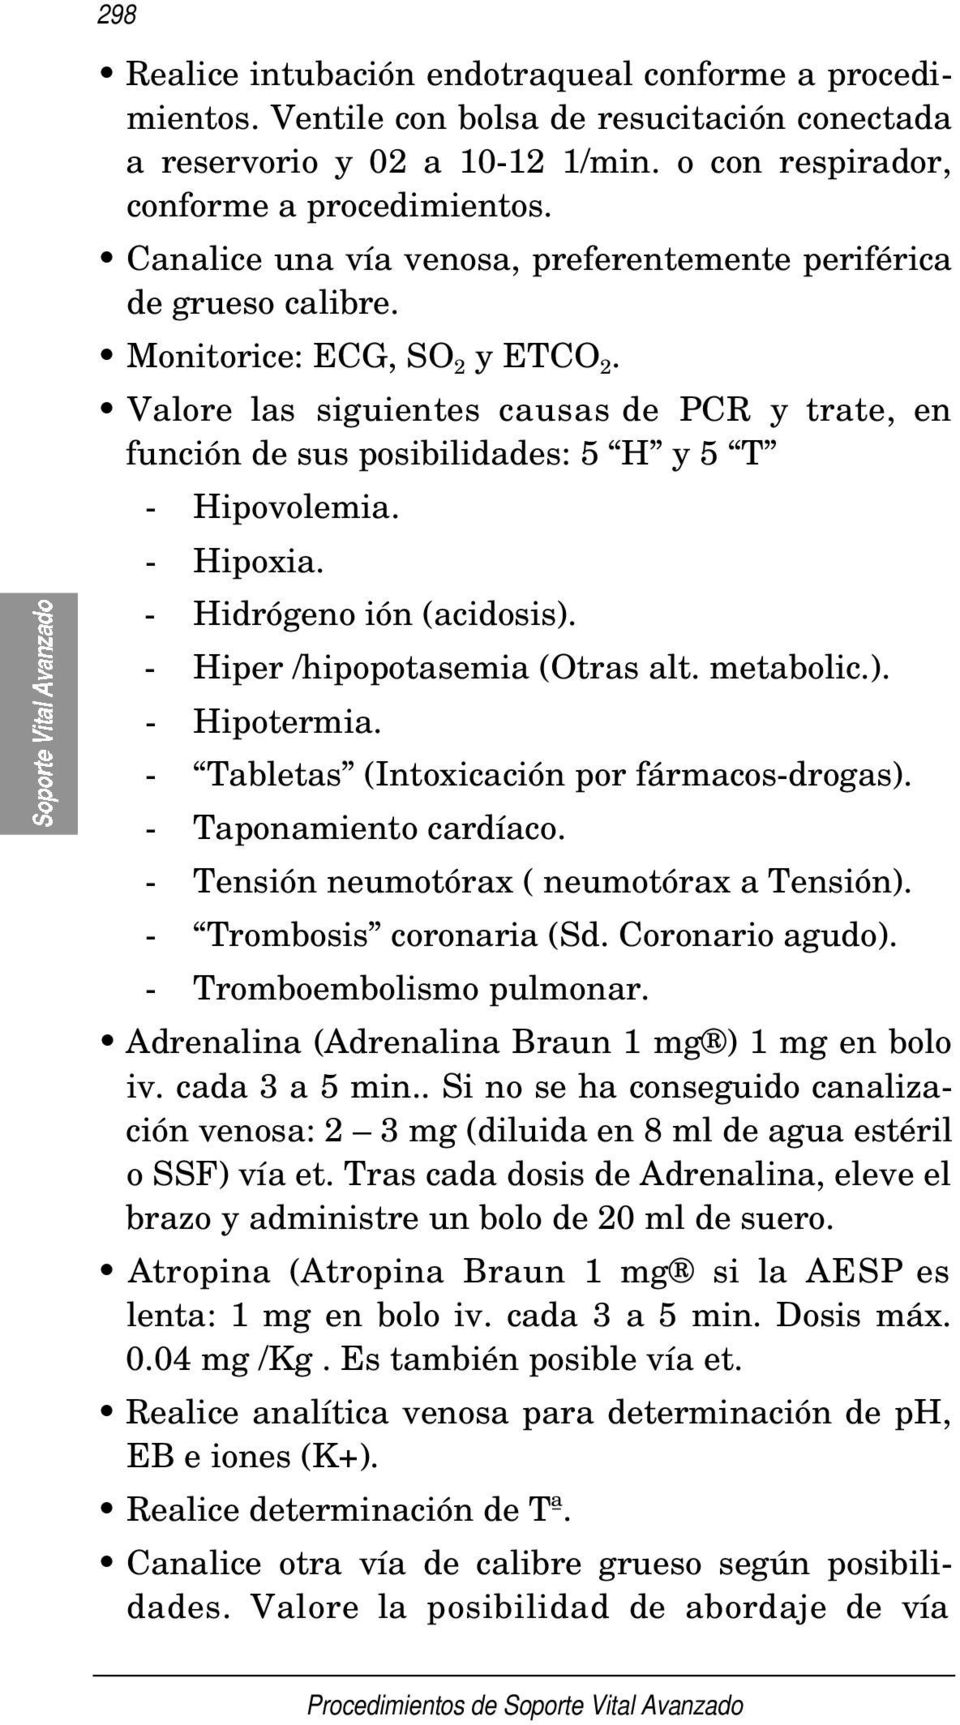 Valore las siguientes causas de PCR y trate, en función de sus posibilidades: 5 H y 5 T - Hipovolemia. - Hipoxia. - Hidrógeno ión (acidosis). - Hiper /hipopotasemia (Otras alt. metabolic.). - Hipotermia.